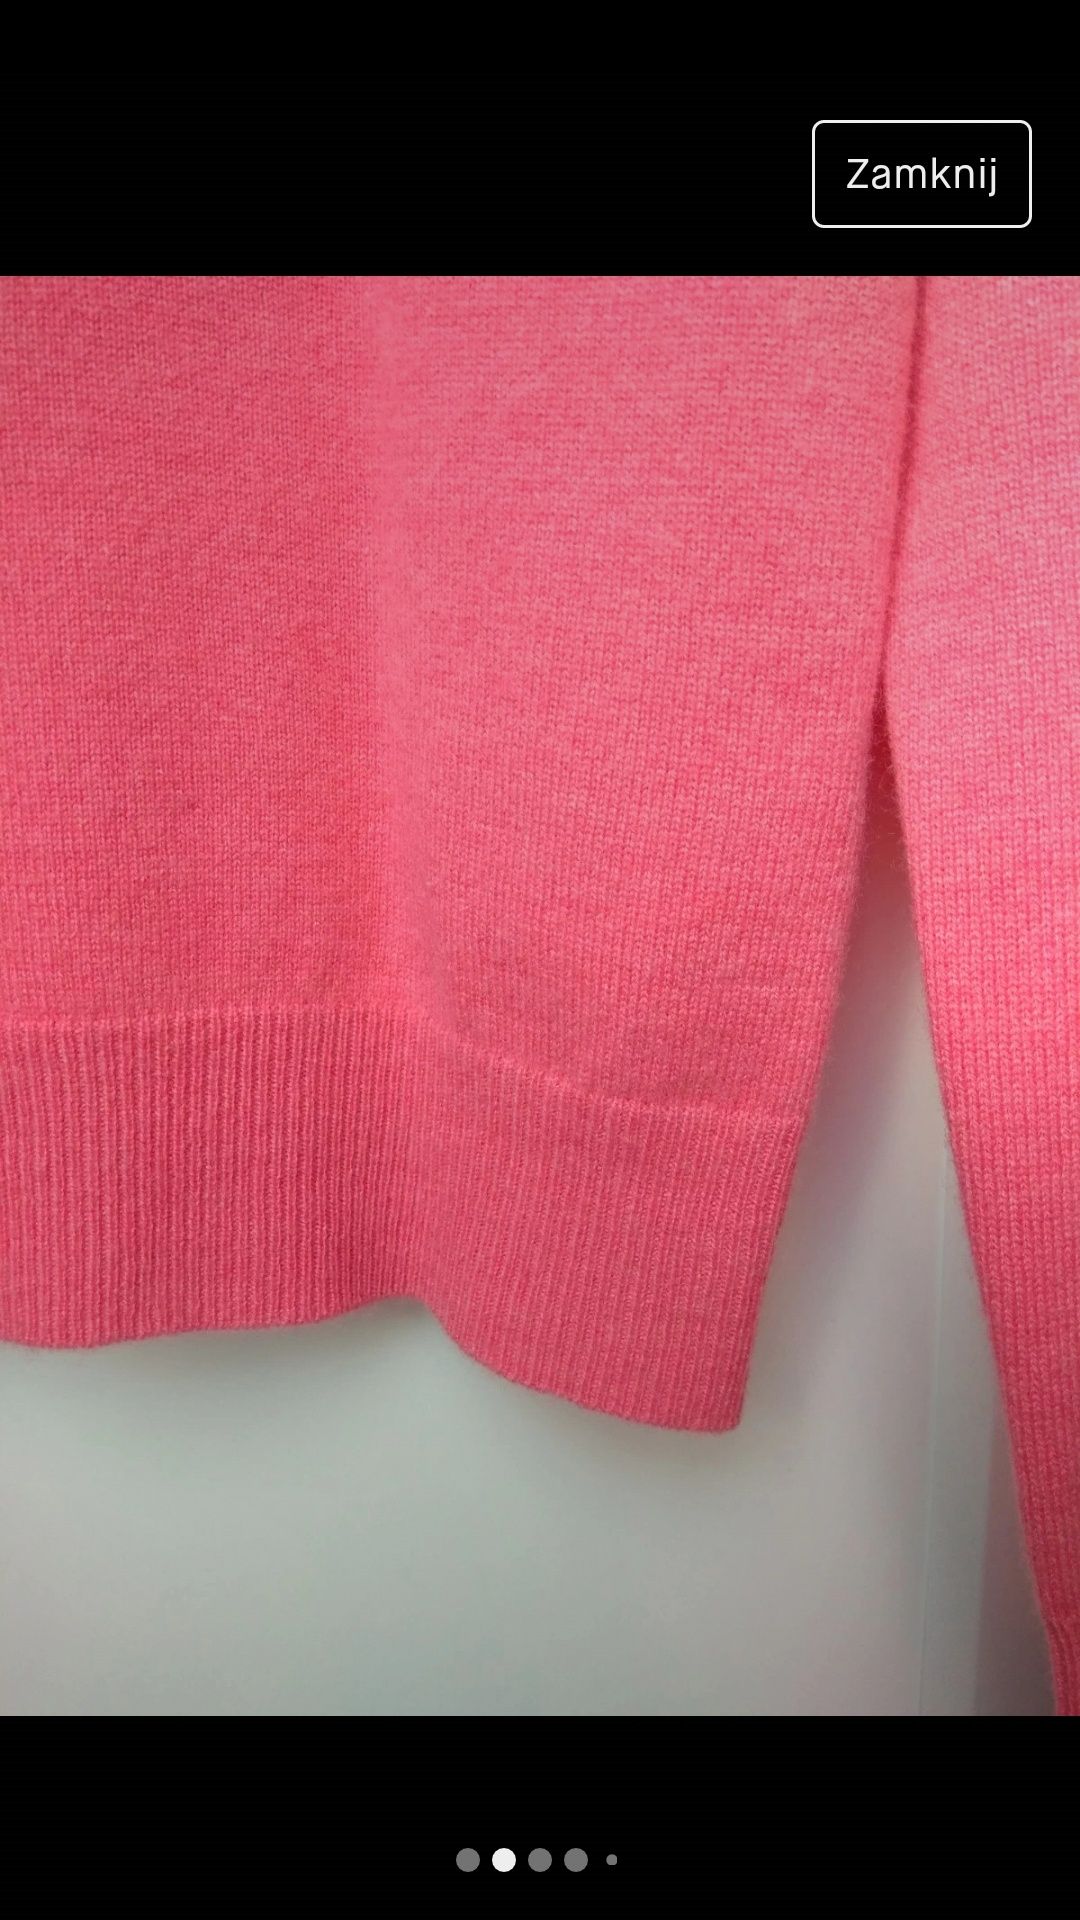 Piękny kaszmirowy sweter w kolorze twarzowego różu Repeat